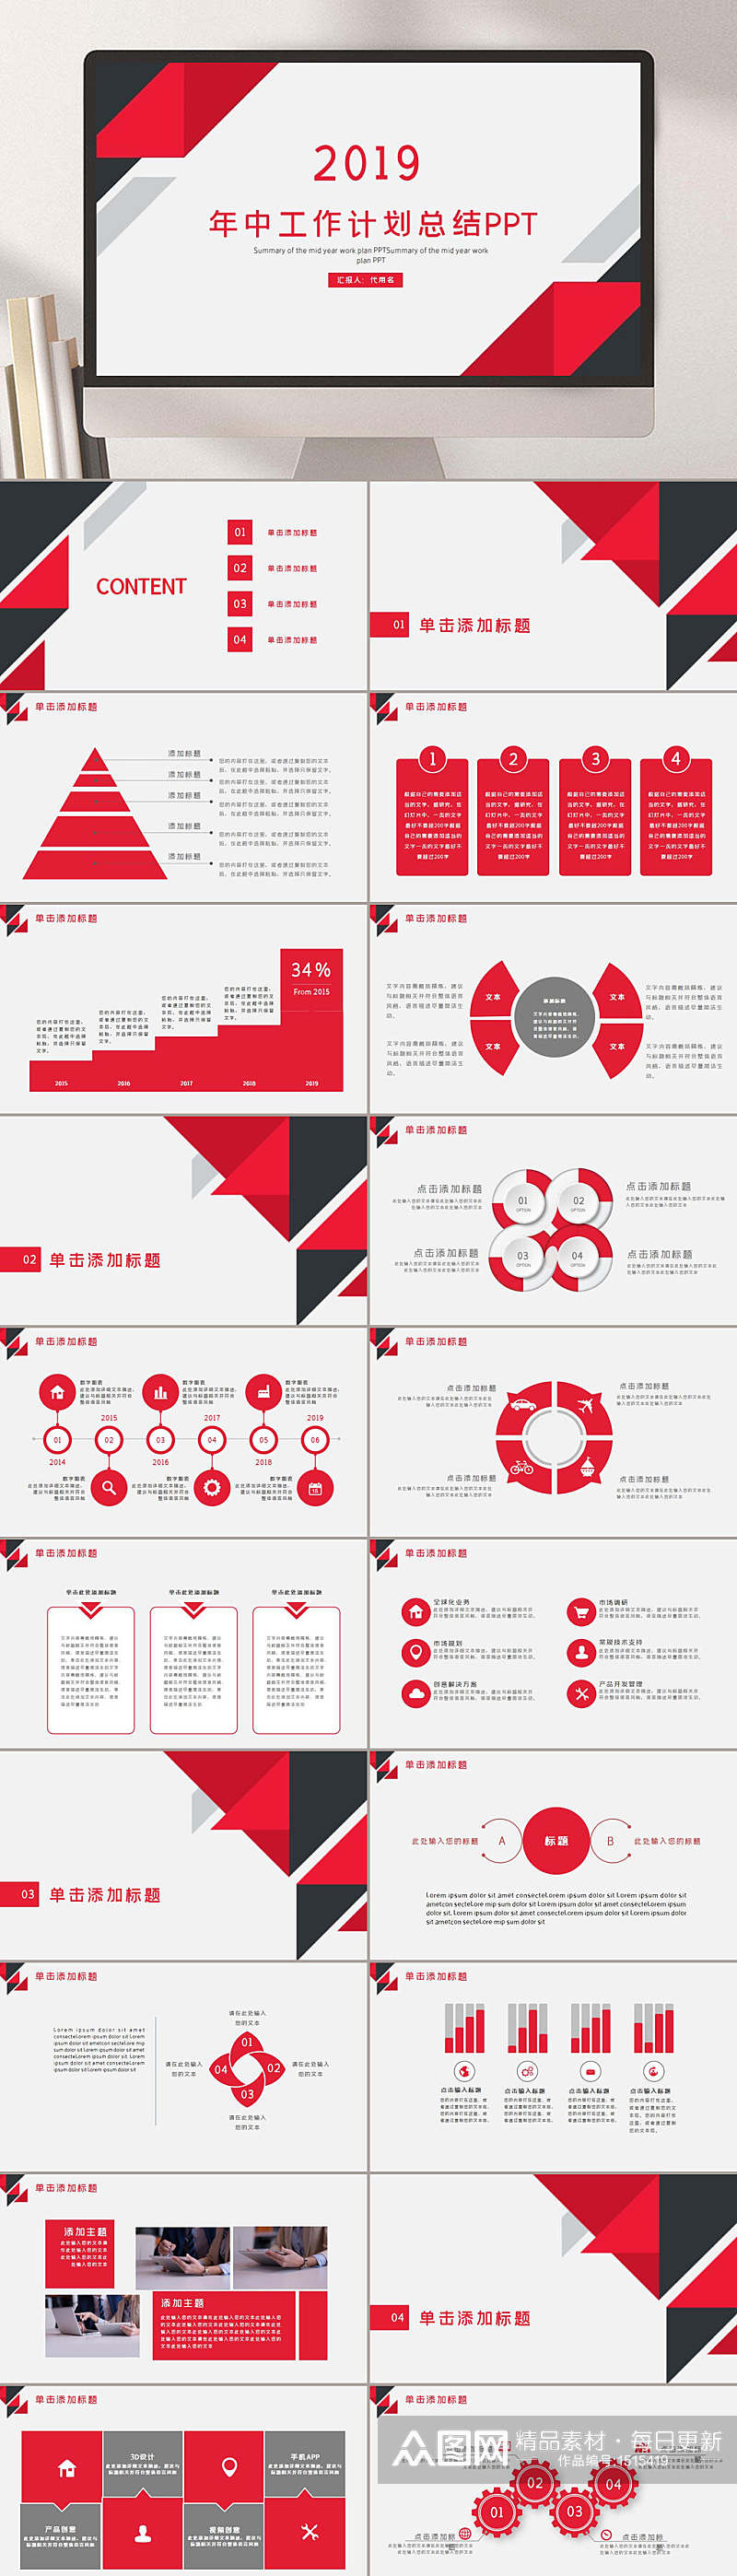 企业年报新年计划红色主题商务模板PPT素材